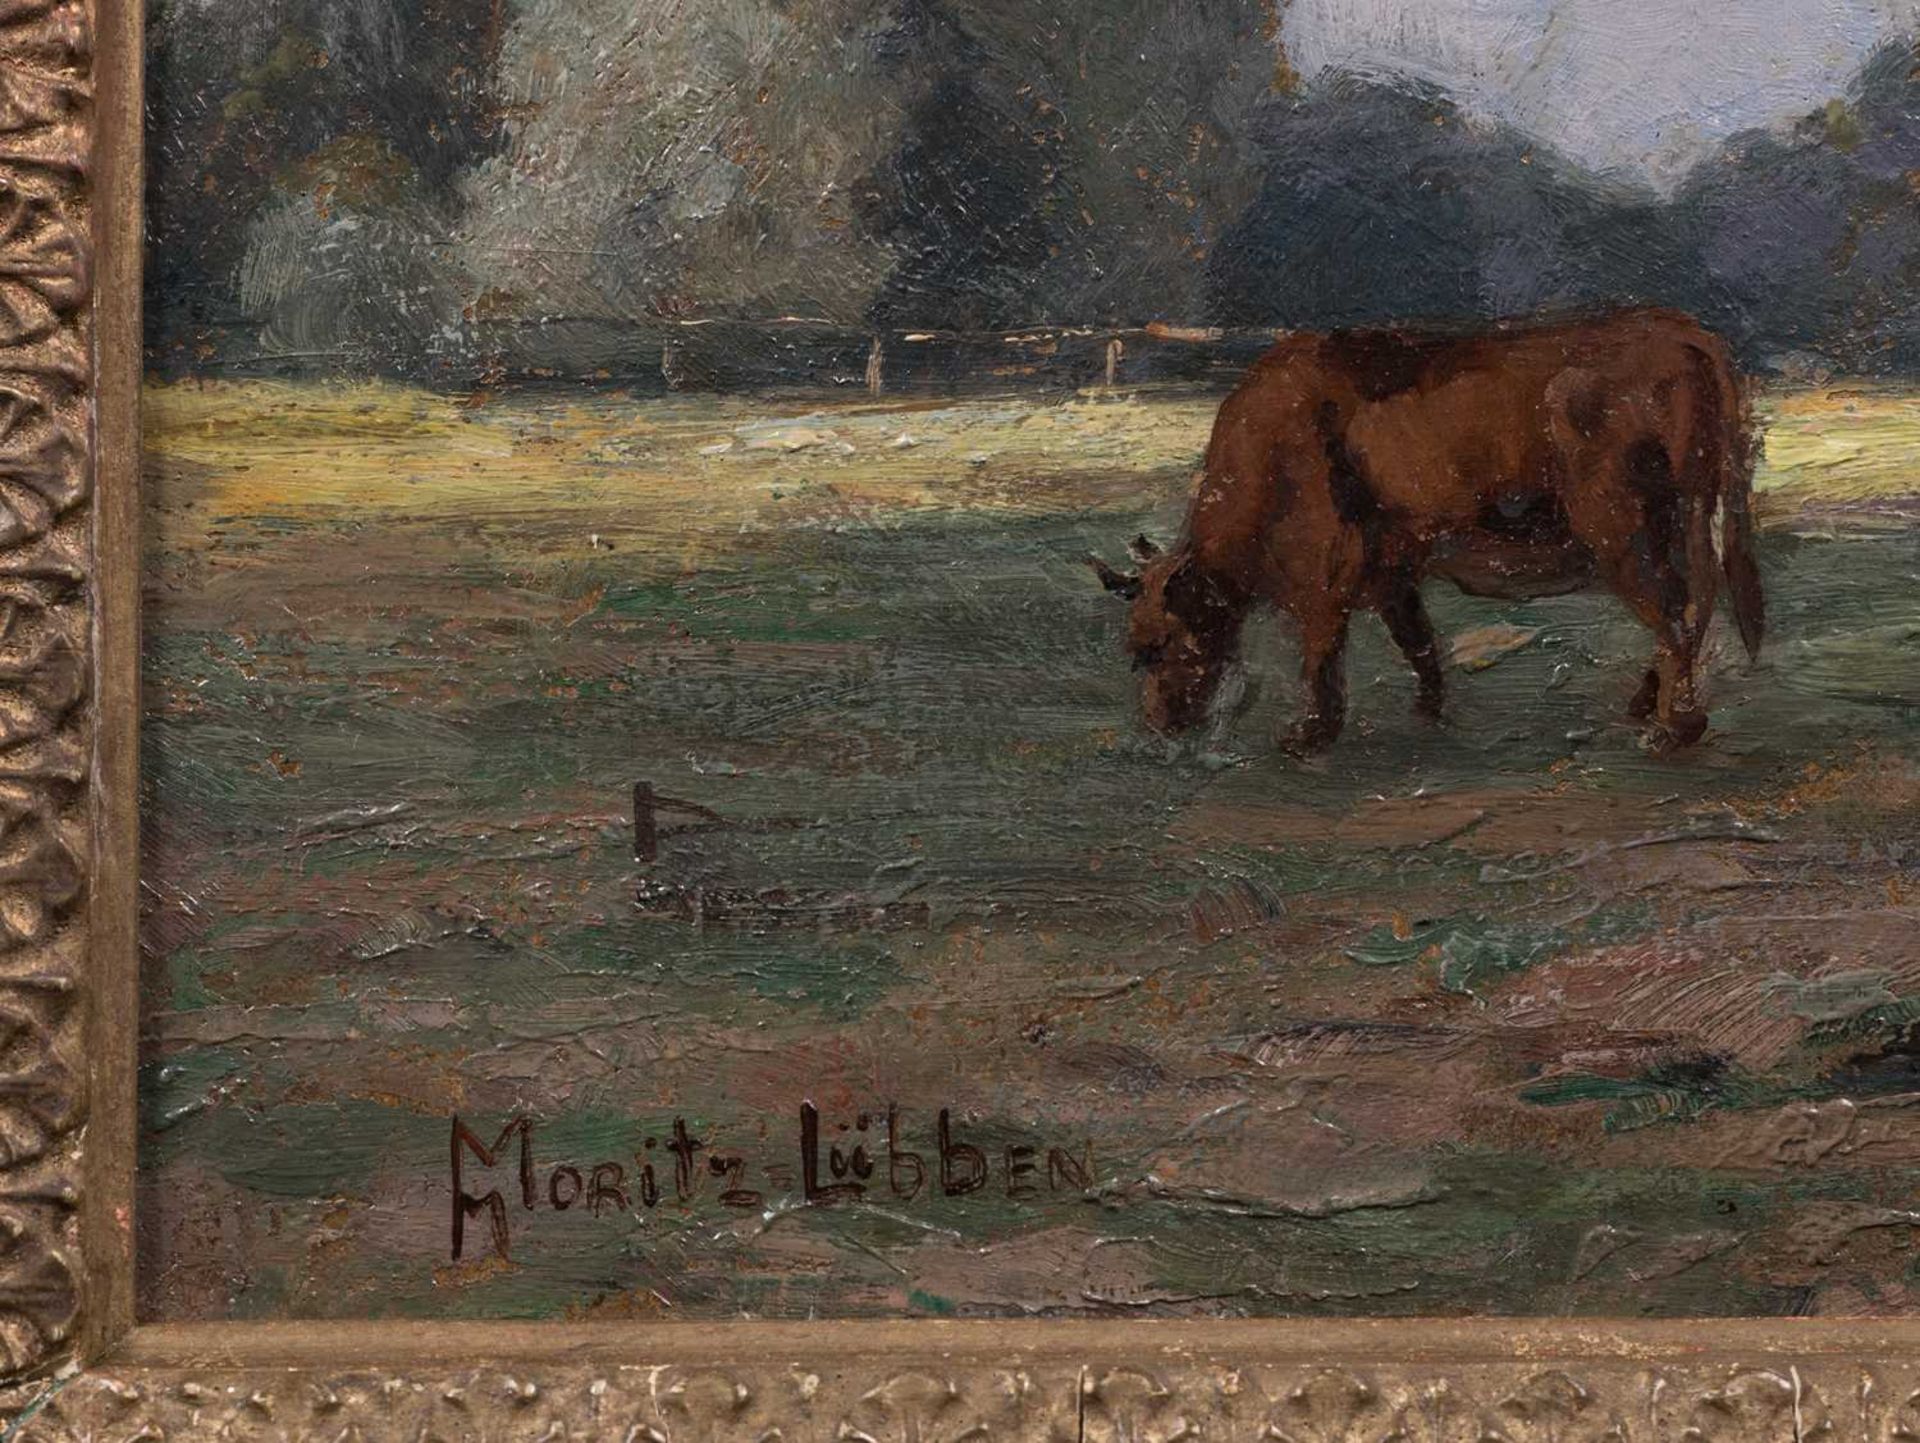 Marie Elisabeth Moritz (1860 - 1925 ) - "M.-Lübben" - Bild 5 aus 5